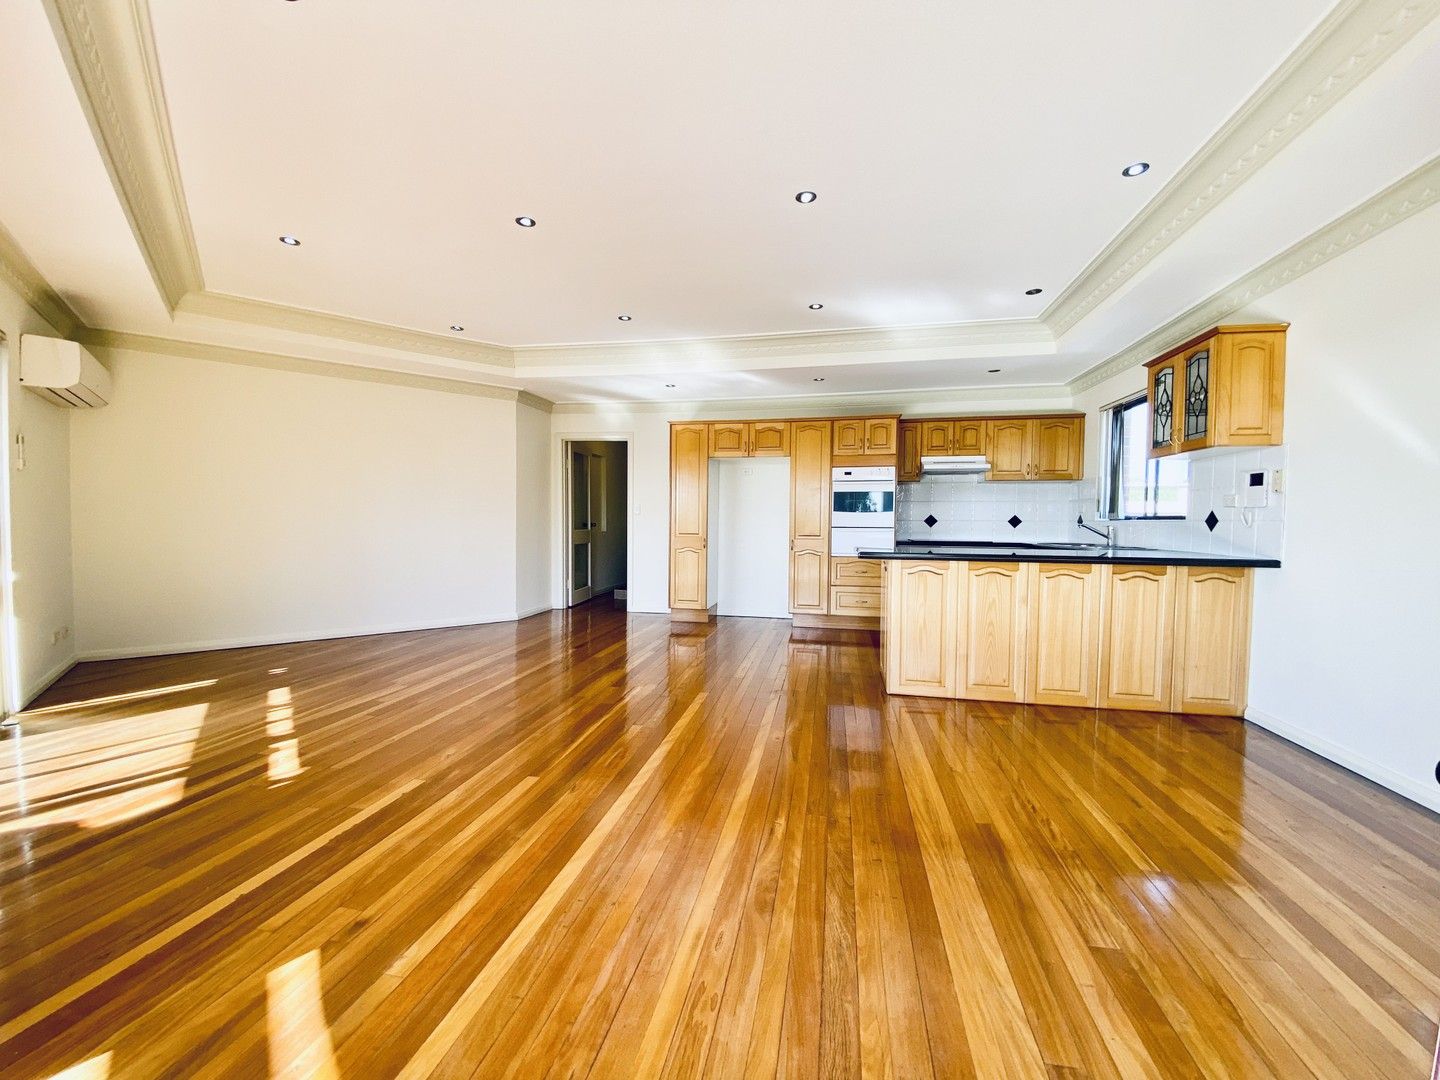 2 bedrooms Apartment / Unit / Flat in 3/84 Penshurst Street PENSHURST NSW, 2222